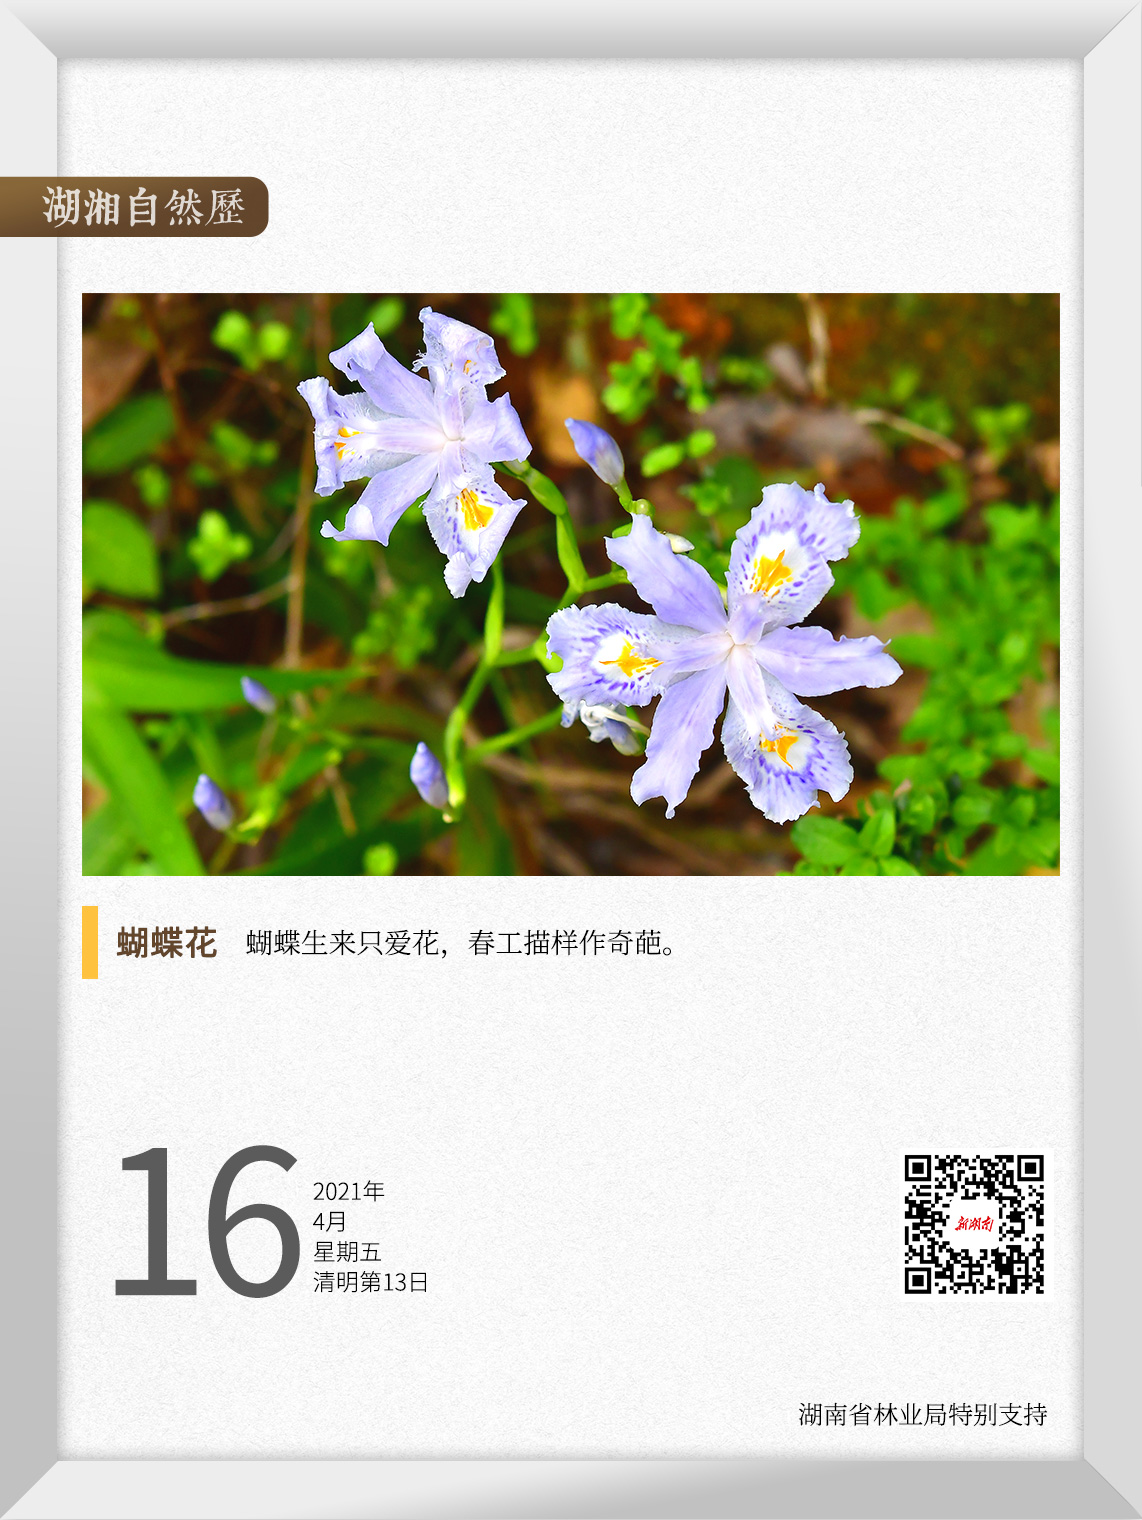 湖湘自然历丨30秒 等一朵花开 四月风吹 蝴蝶花 华声在线